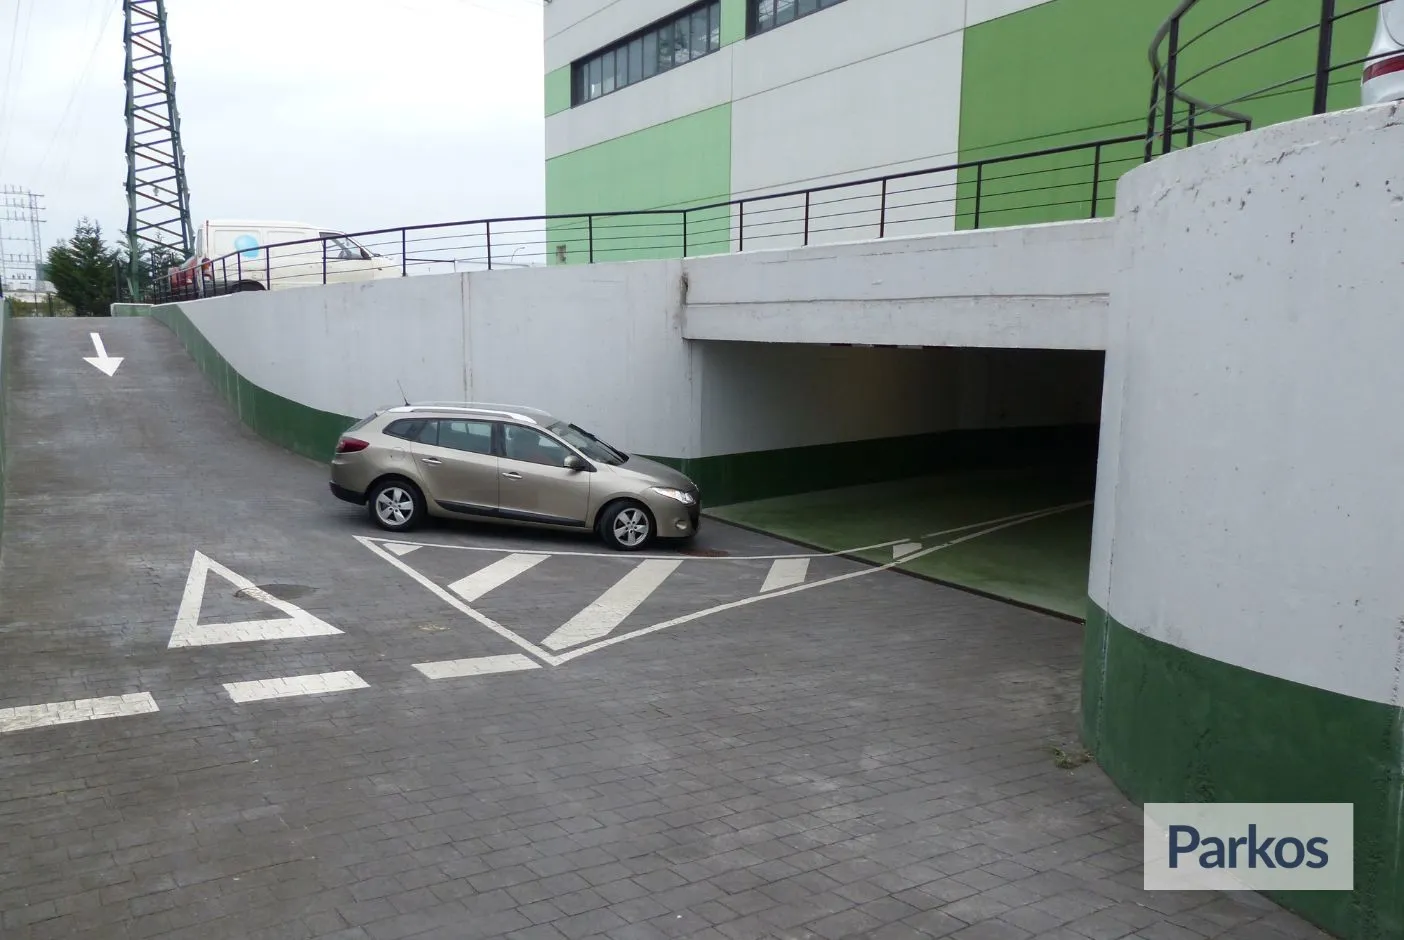 Epark Bilbao - Bilbao Airport Parking - picture 1